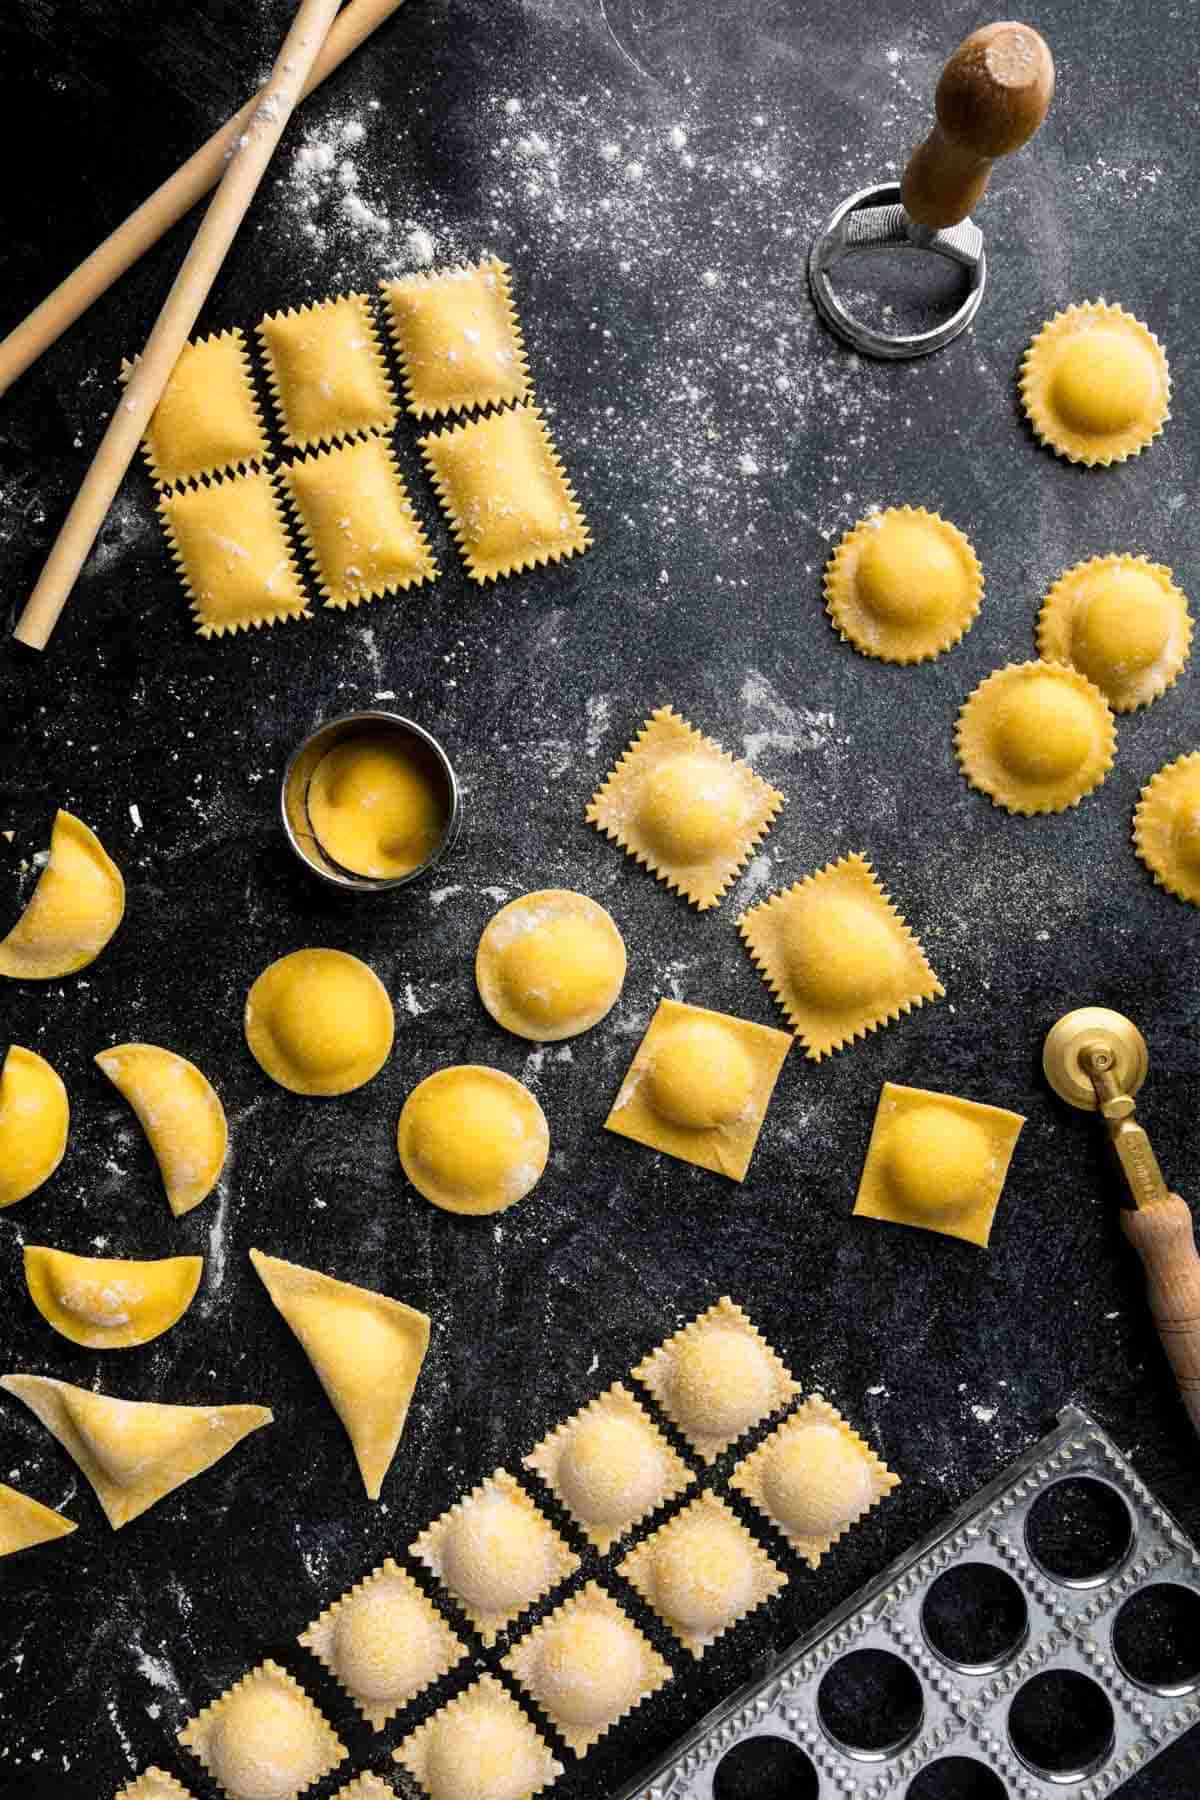 Several shapes of homemade ravioli and fresh pasta making tools.